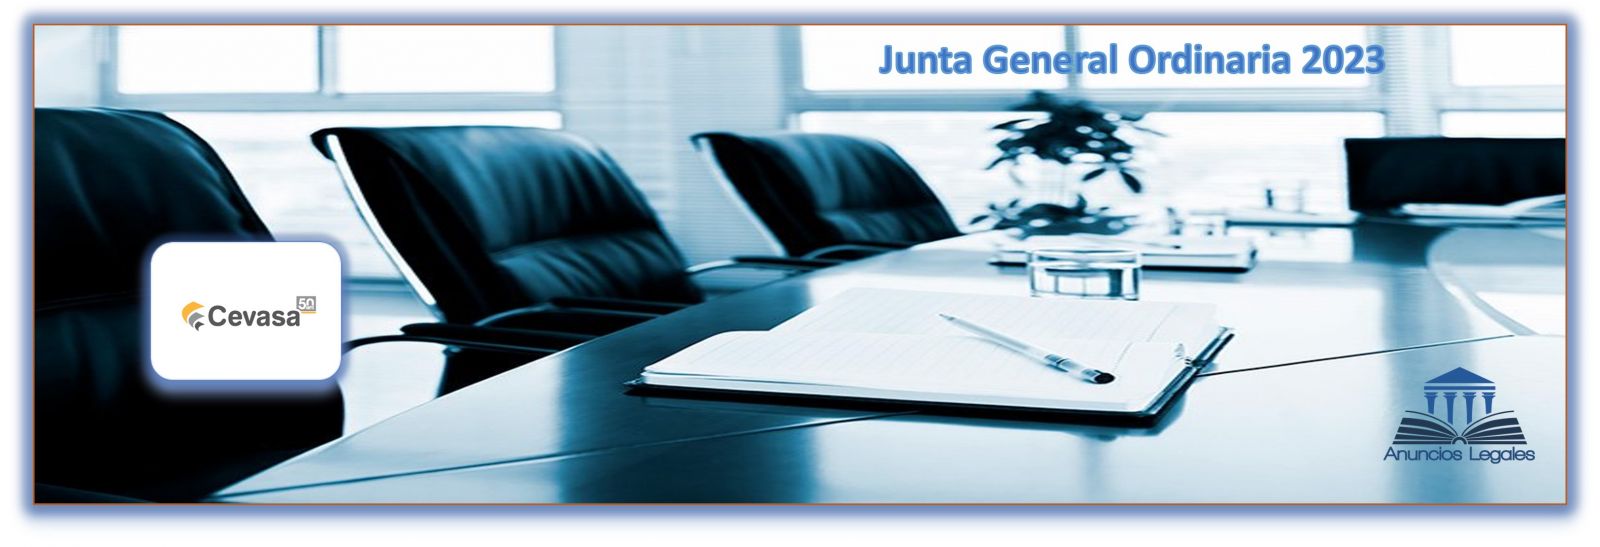 La sociedad CEVASA anuncia Junta General Ordinaria de Accionistas 2023